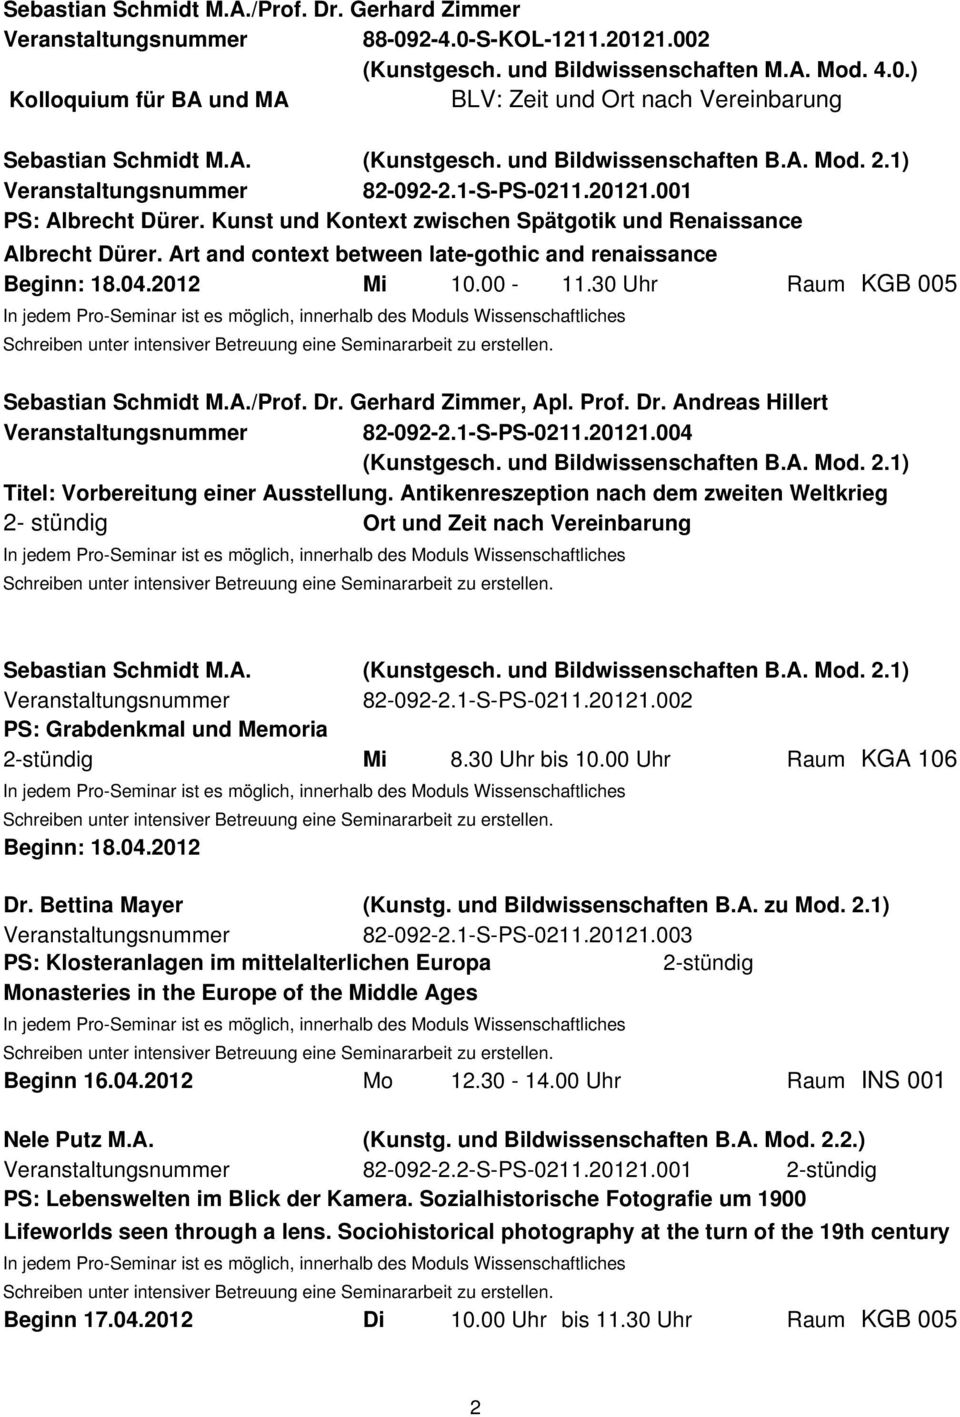 Art and context between late-gothic and renaissance Beginn: 18.04.2012 Mi 10.00-11.30 Uhr Raum KGB 005 Sebastian Schmidt M.A./Prof. Dr. Gerhard Zimmer, Apl. Prof. Dr. Andreas Hillert 82-092-2.